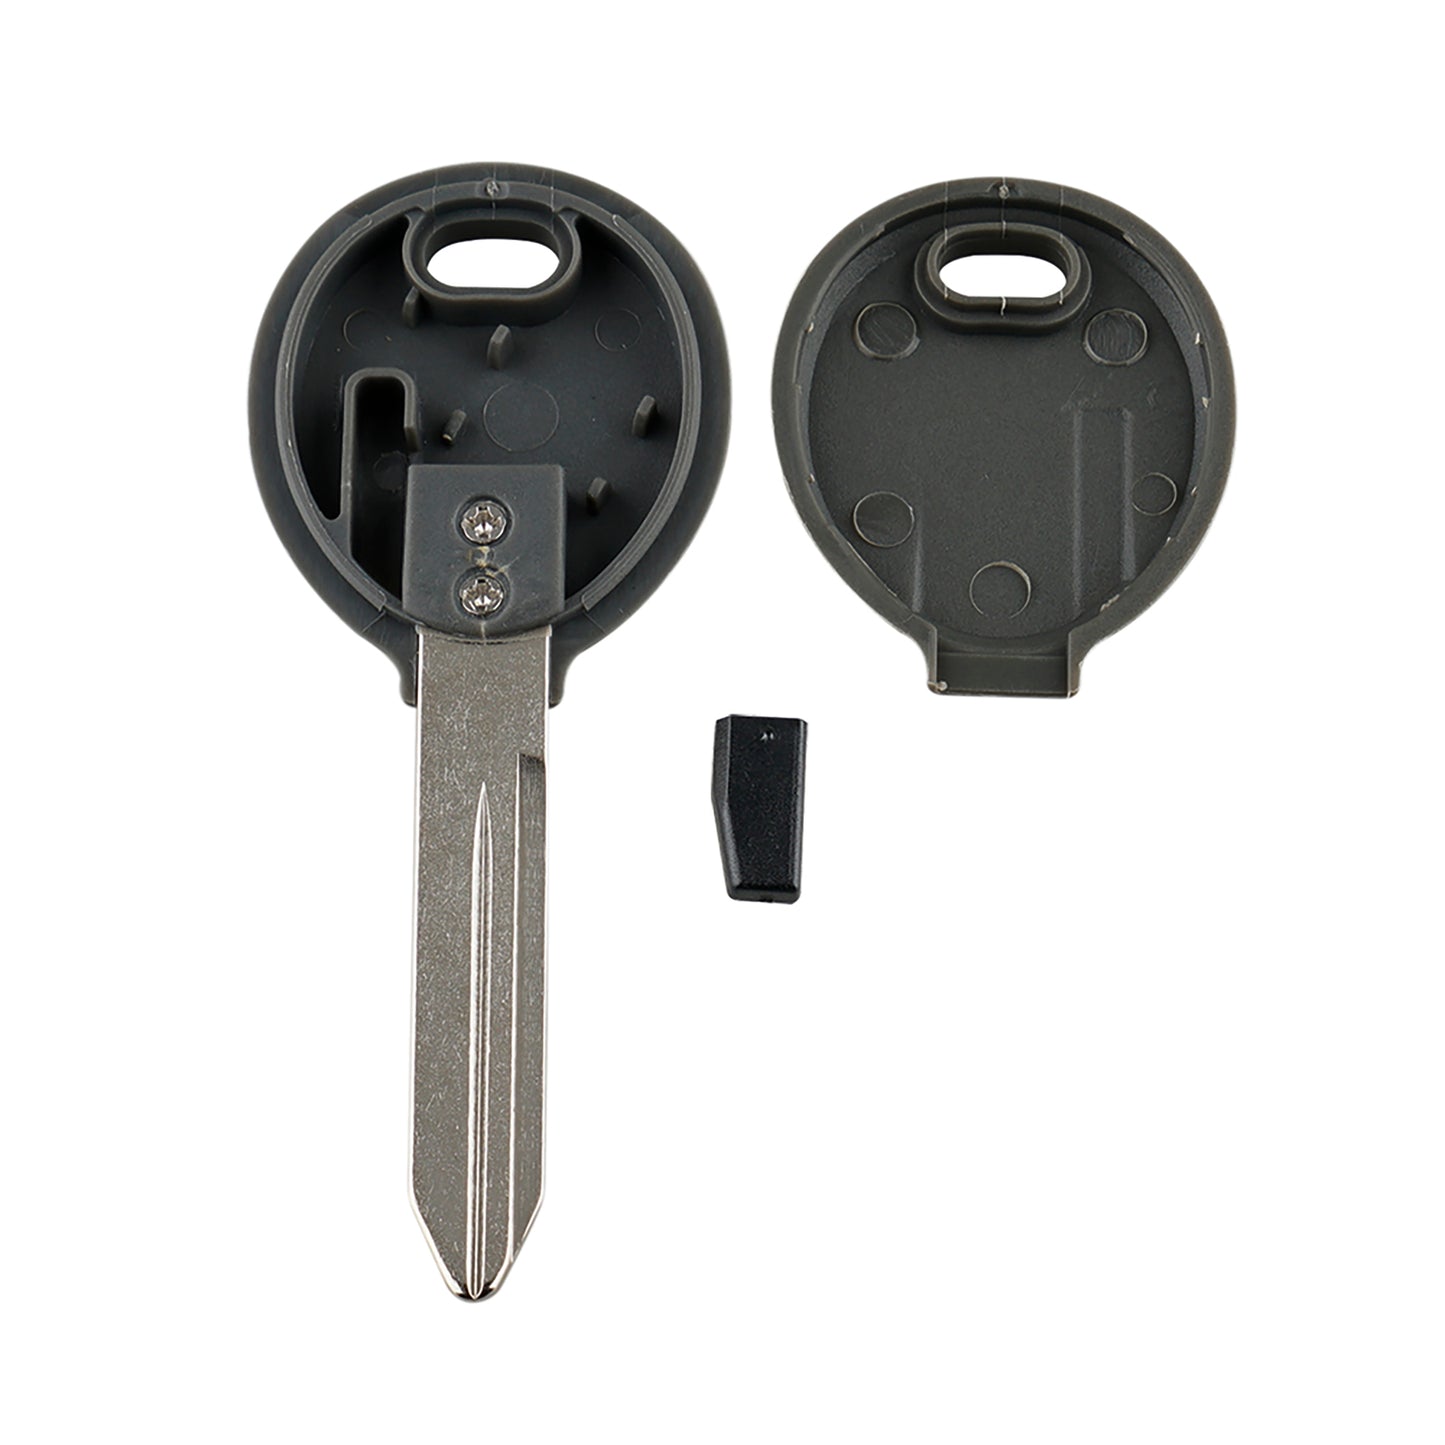 Uncut Ignition Transponder Chip Key For ID 46 Y164-PT Chrysler Dodge Jeep Y164 SKU : J036